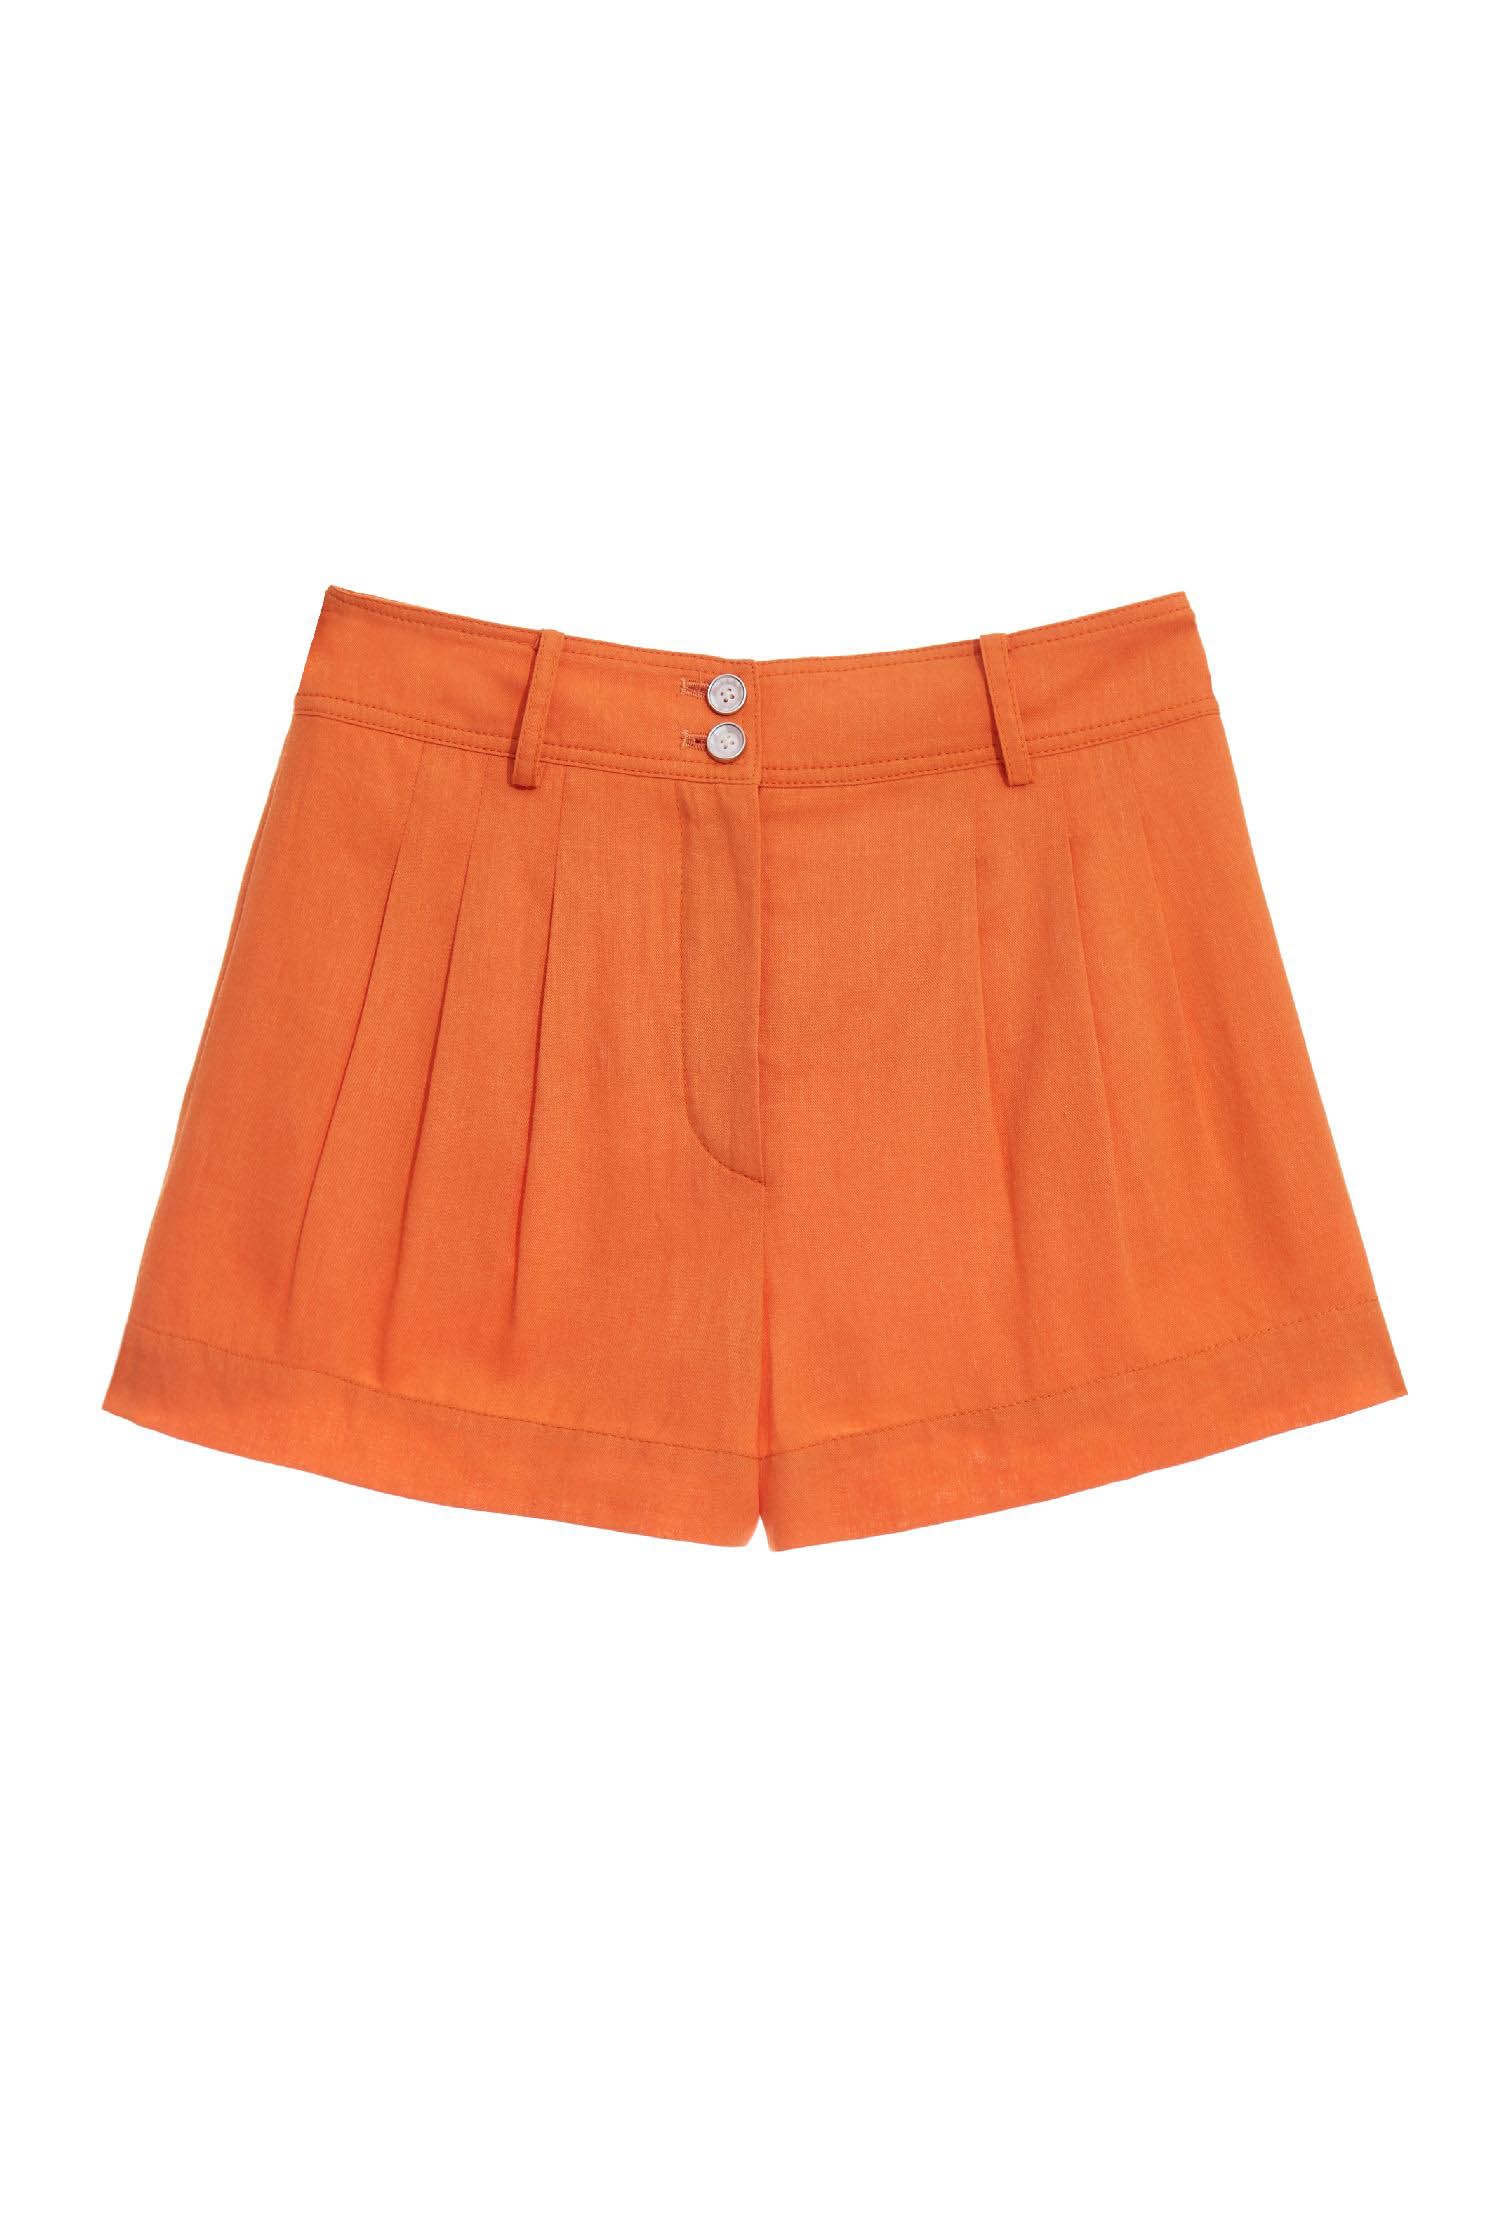 橘色棉麻短褲